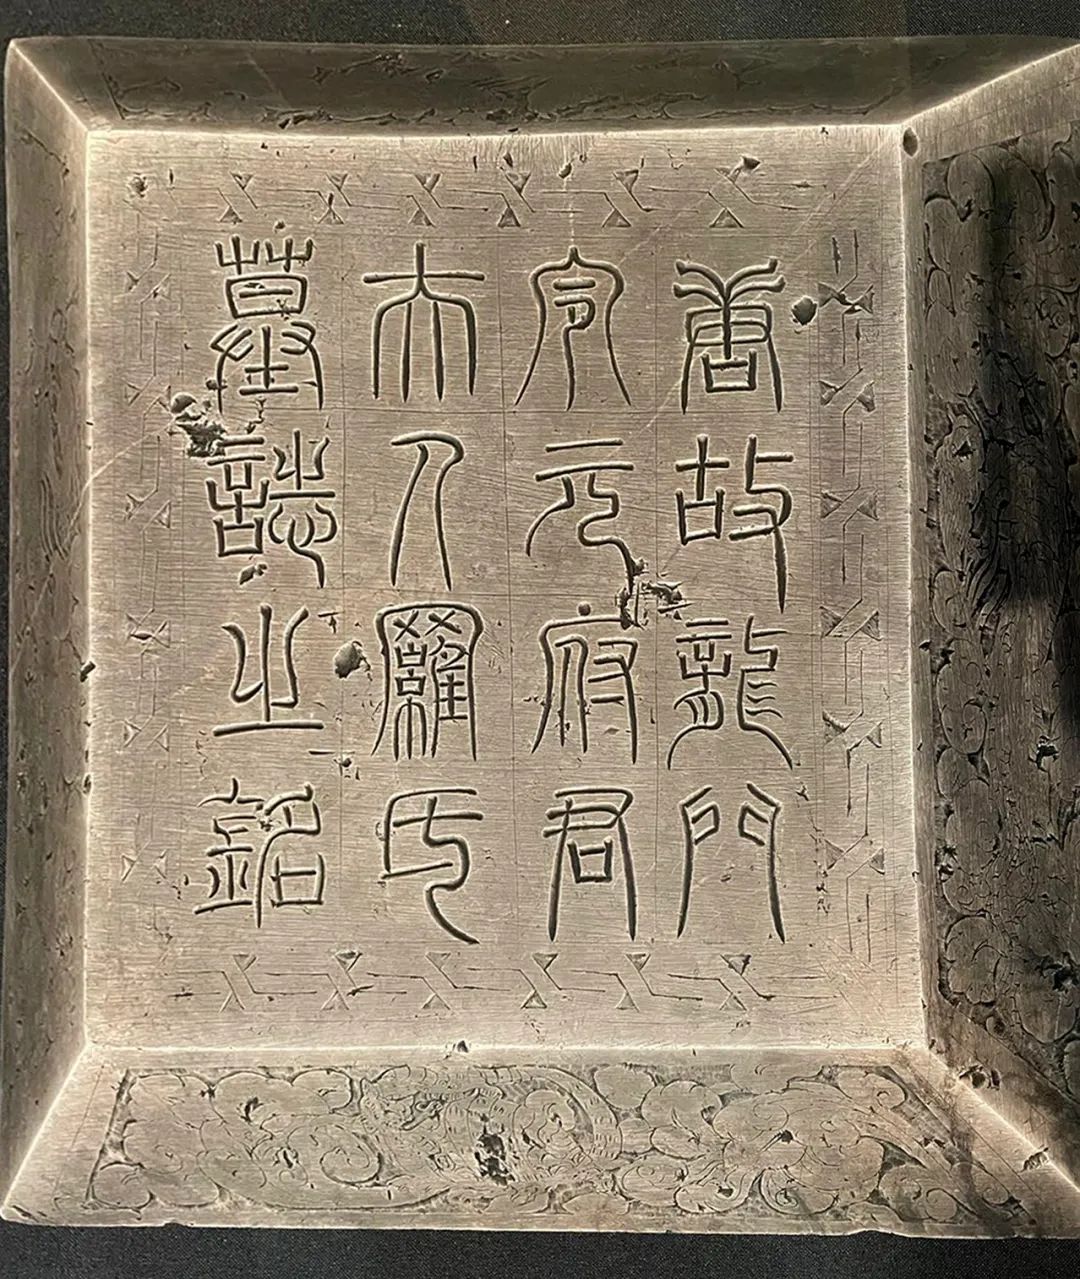 雅昌快讯| 中国第一座考古博物馆开放国宝颜真卿手书墓志亮相